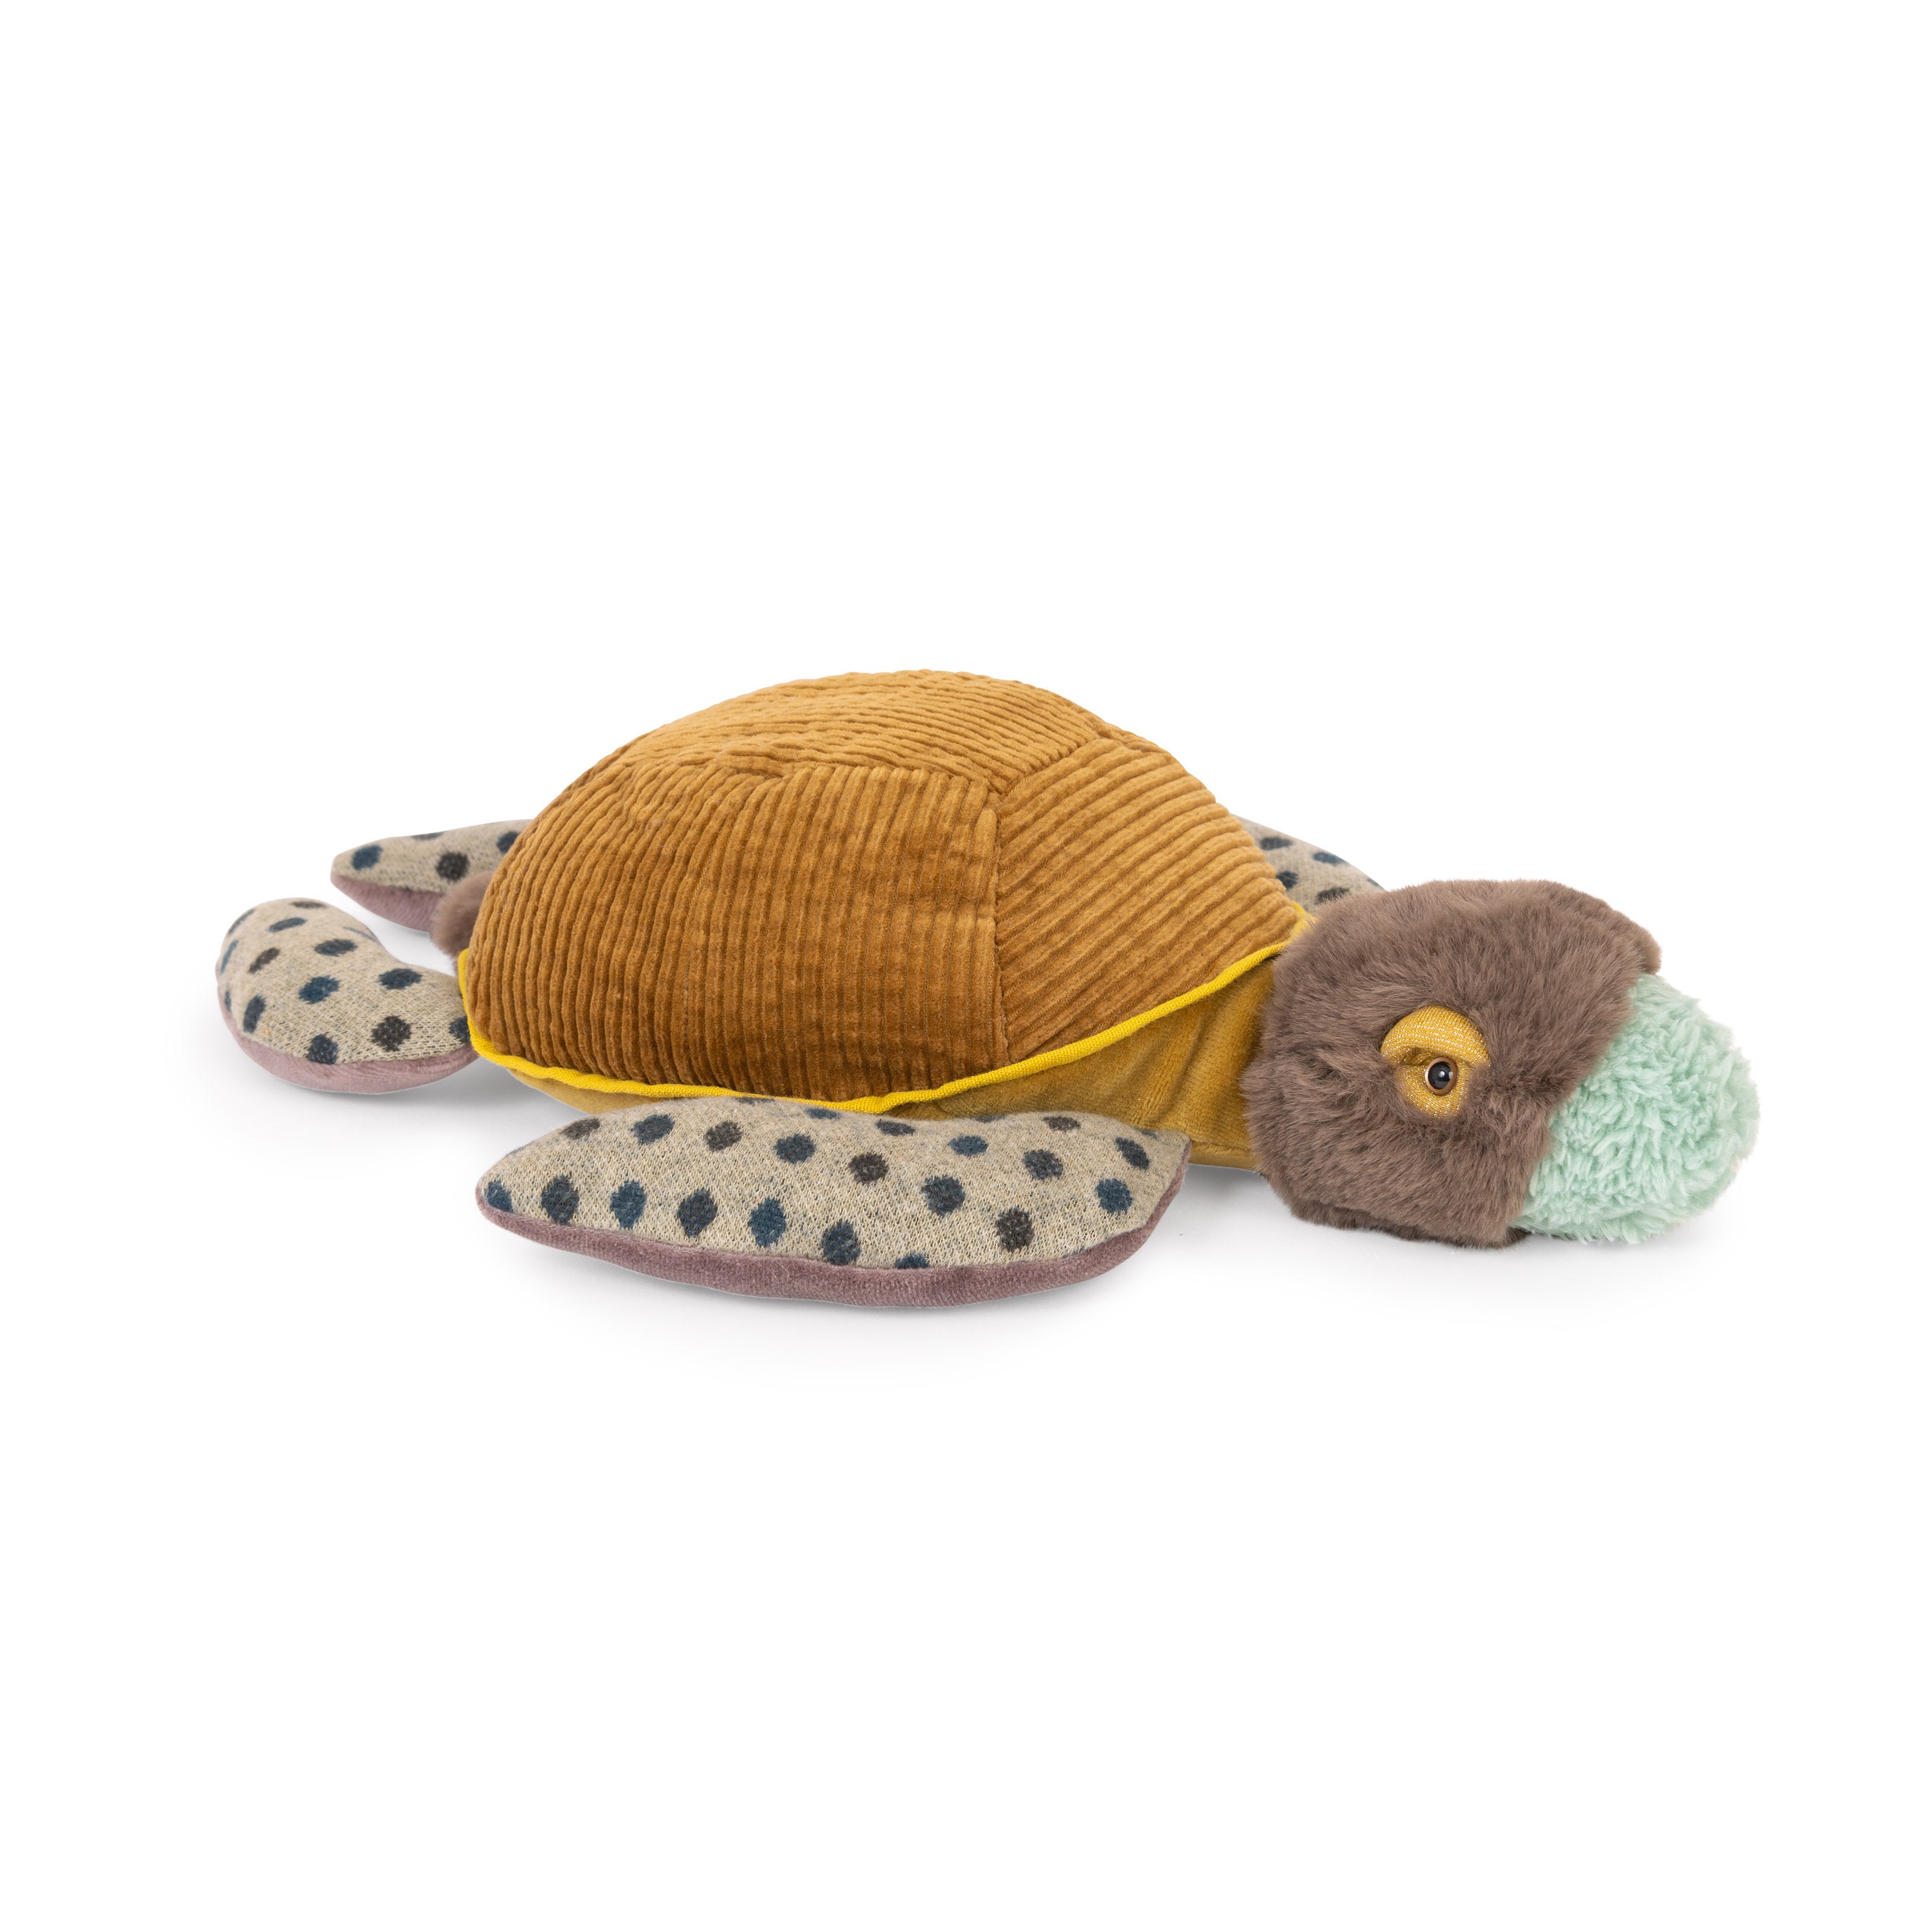 Turtle Soft Toy - Moo Like a Monkey